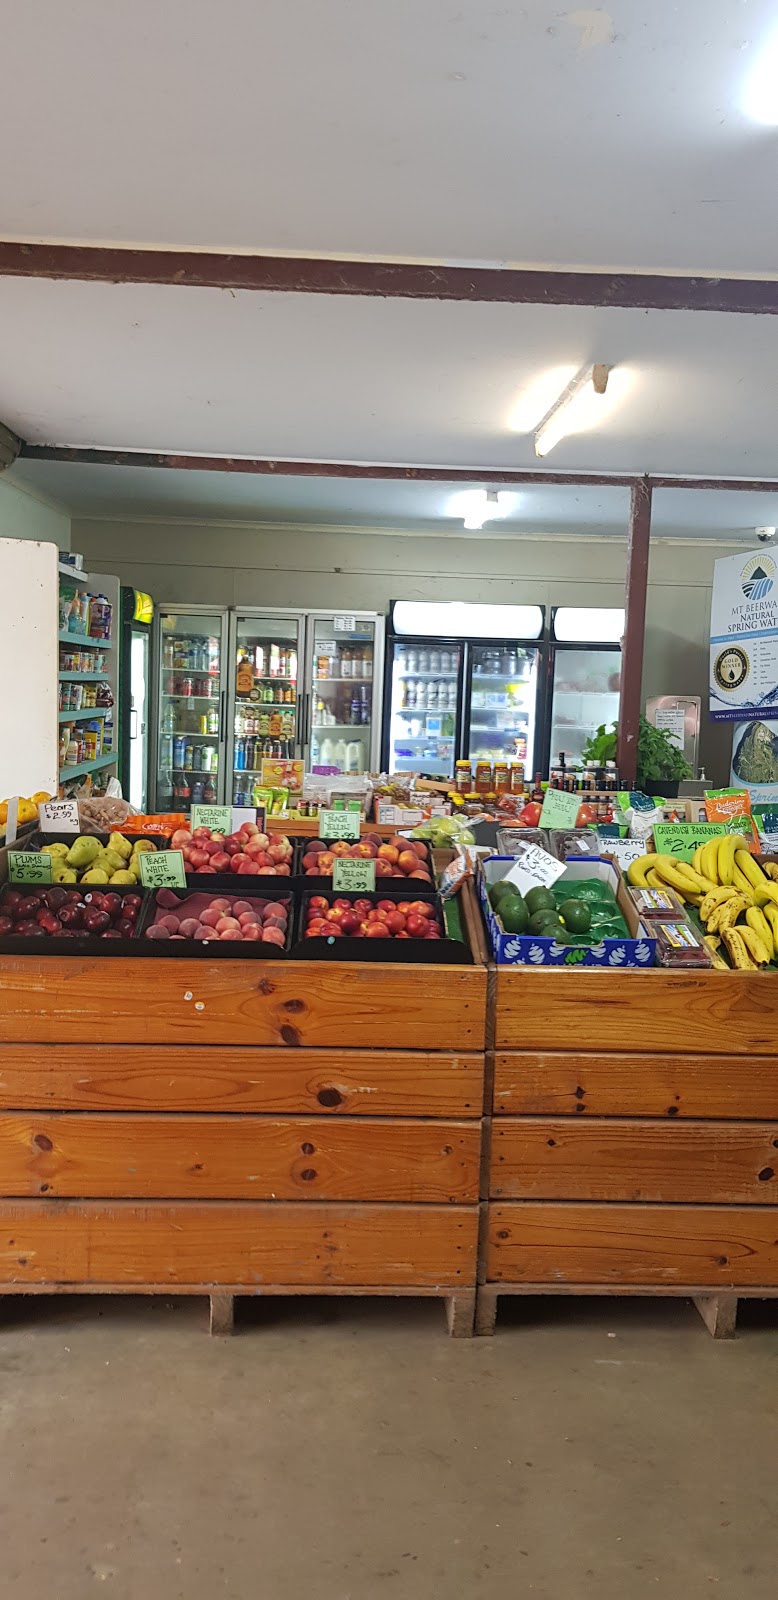 Frohloffs Fruit Barn | store | 346/364 Kilcoy-Beerwah Rd, Beerwah QLD 4519, Australia